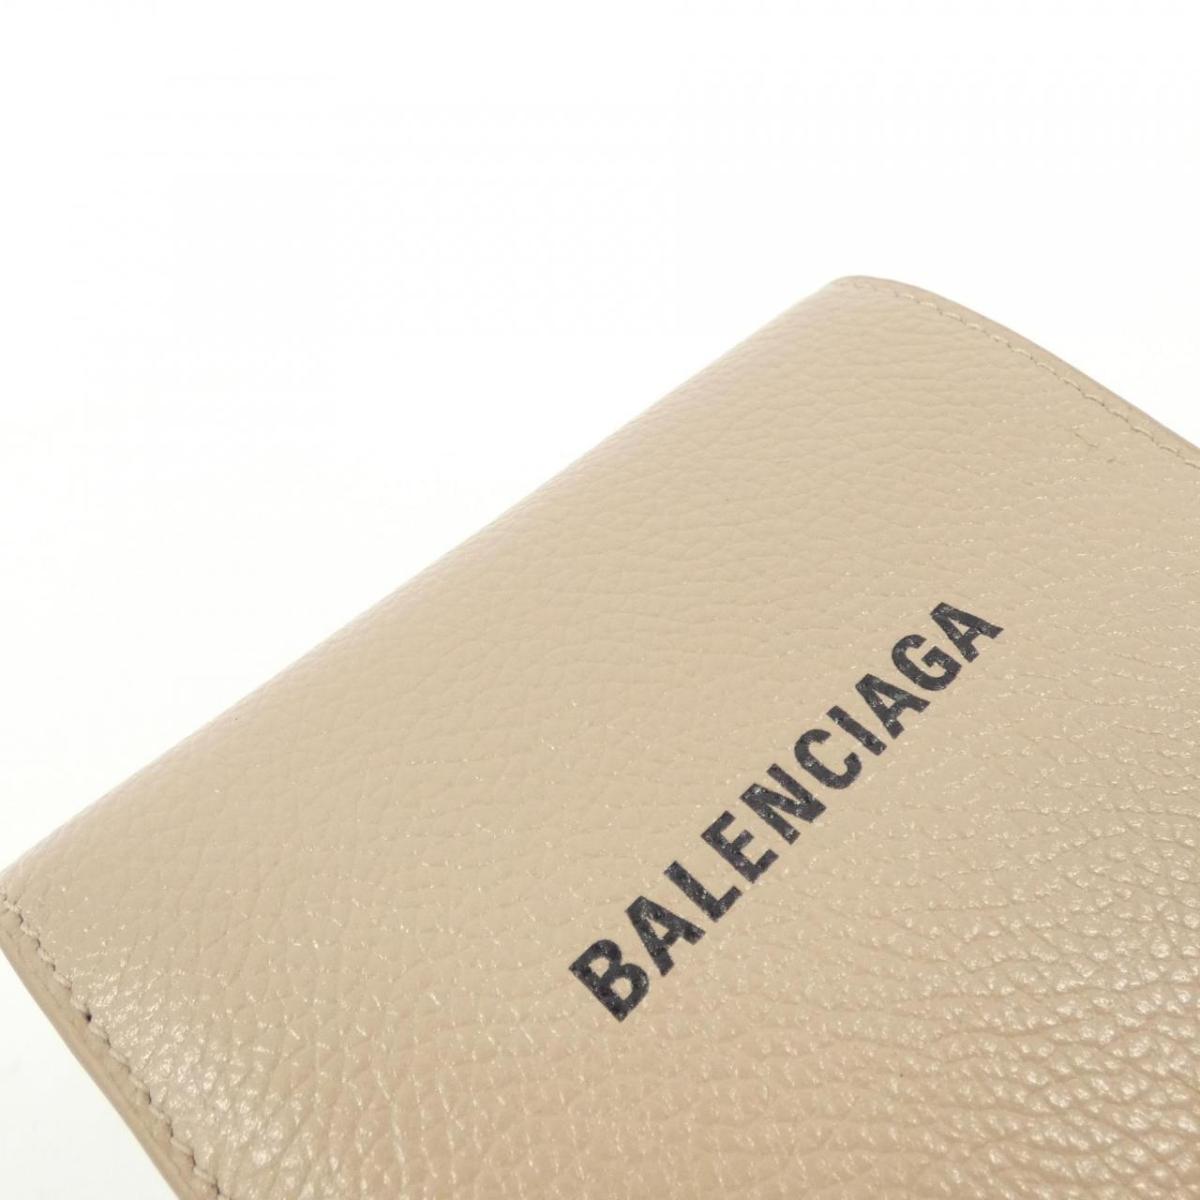 Balenciaga Cash Flop Coin &amp; Card Her 594216 1IZI3 Wallet